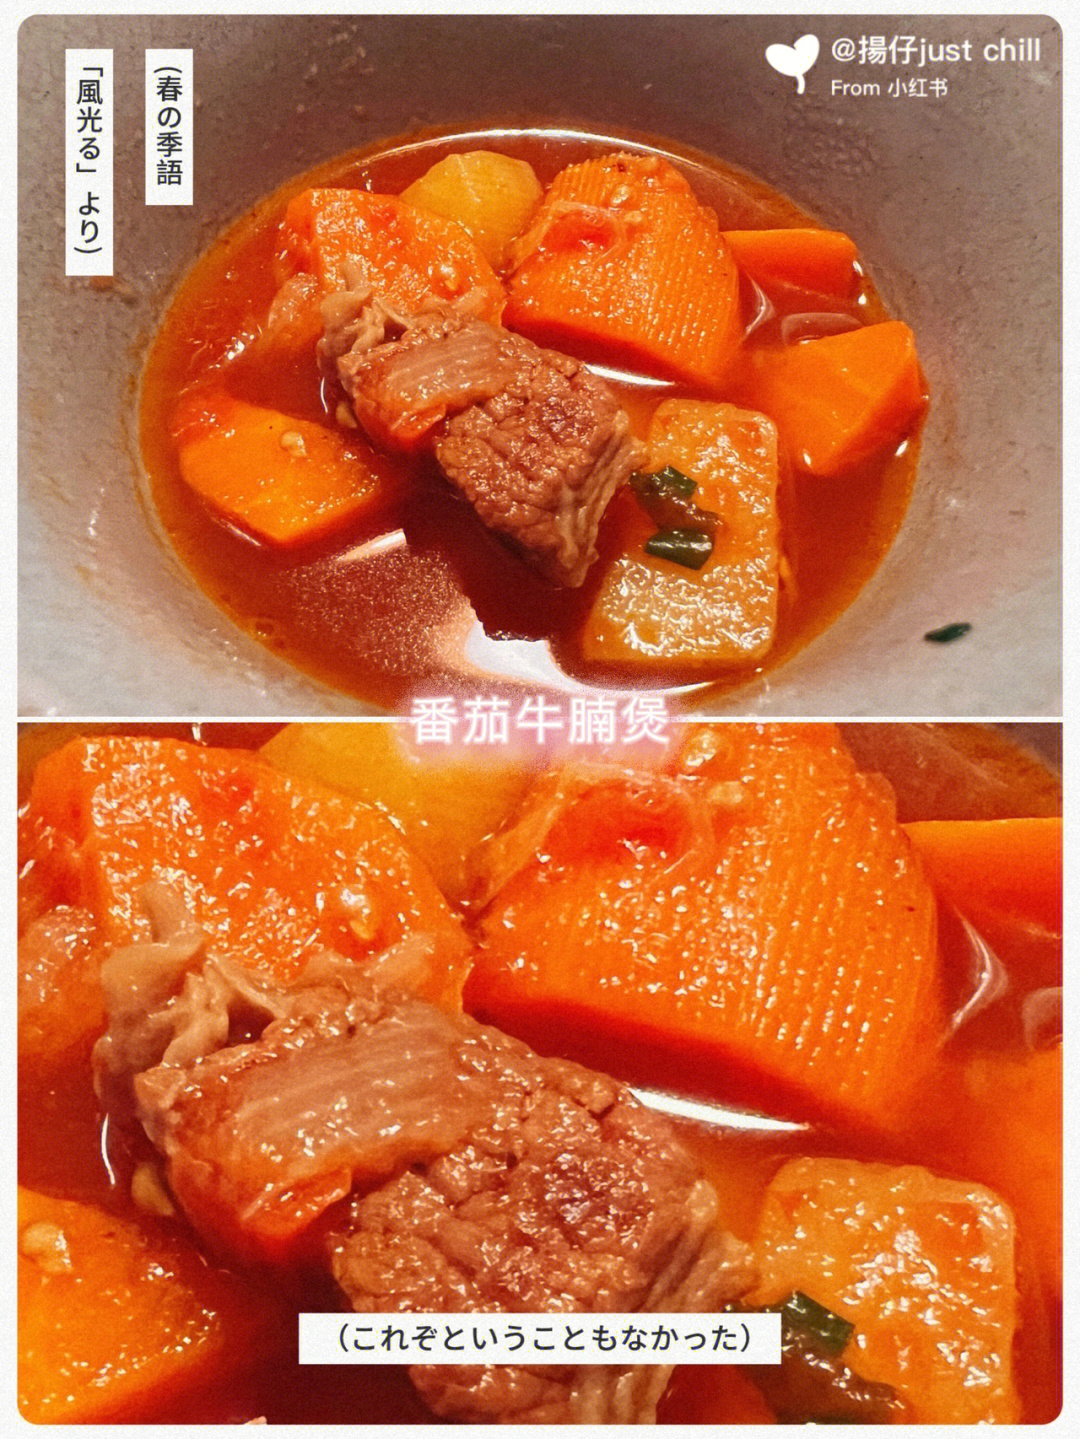 年夜番茄饺子牛腩锅图片